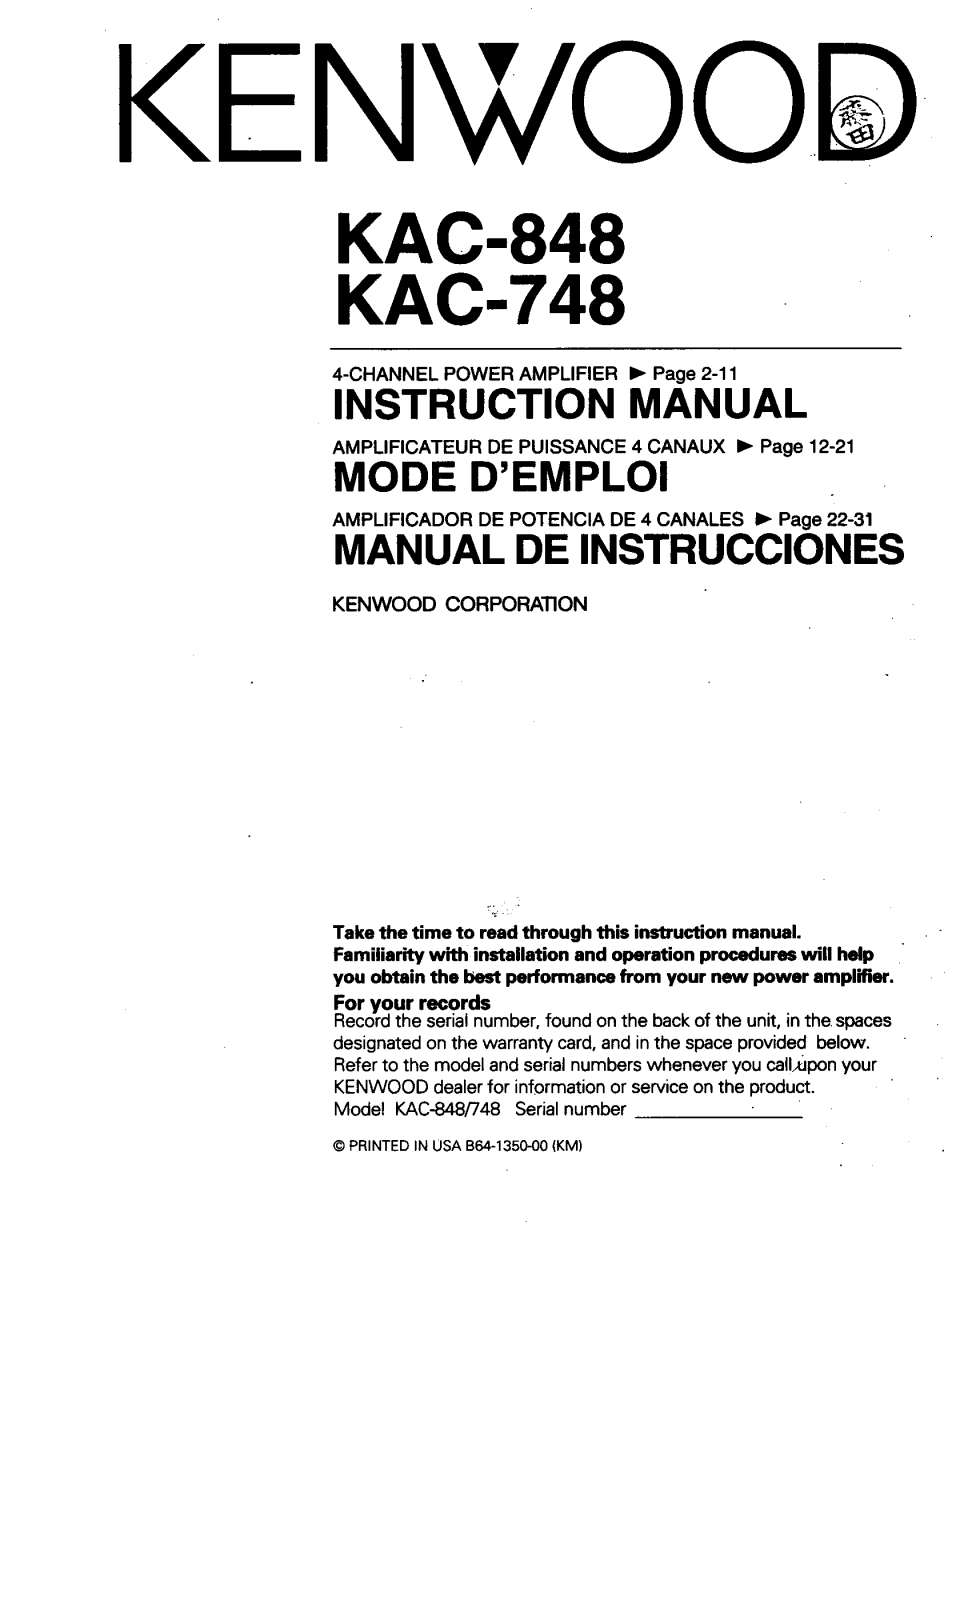 KENWOOD KAC-848 User Manual